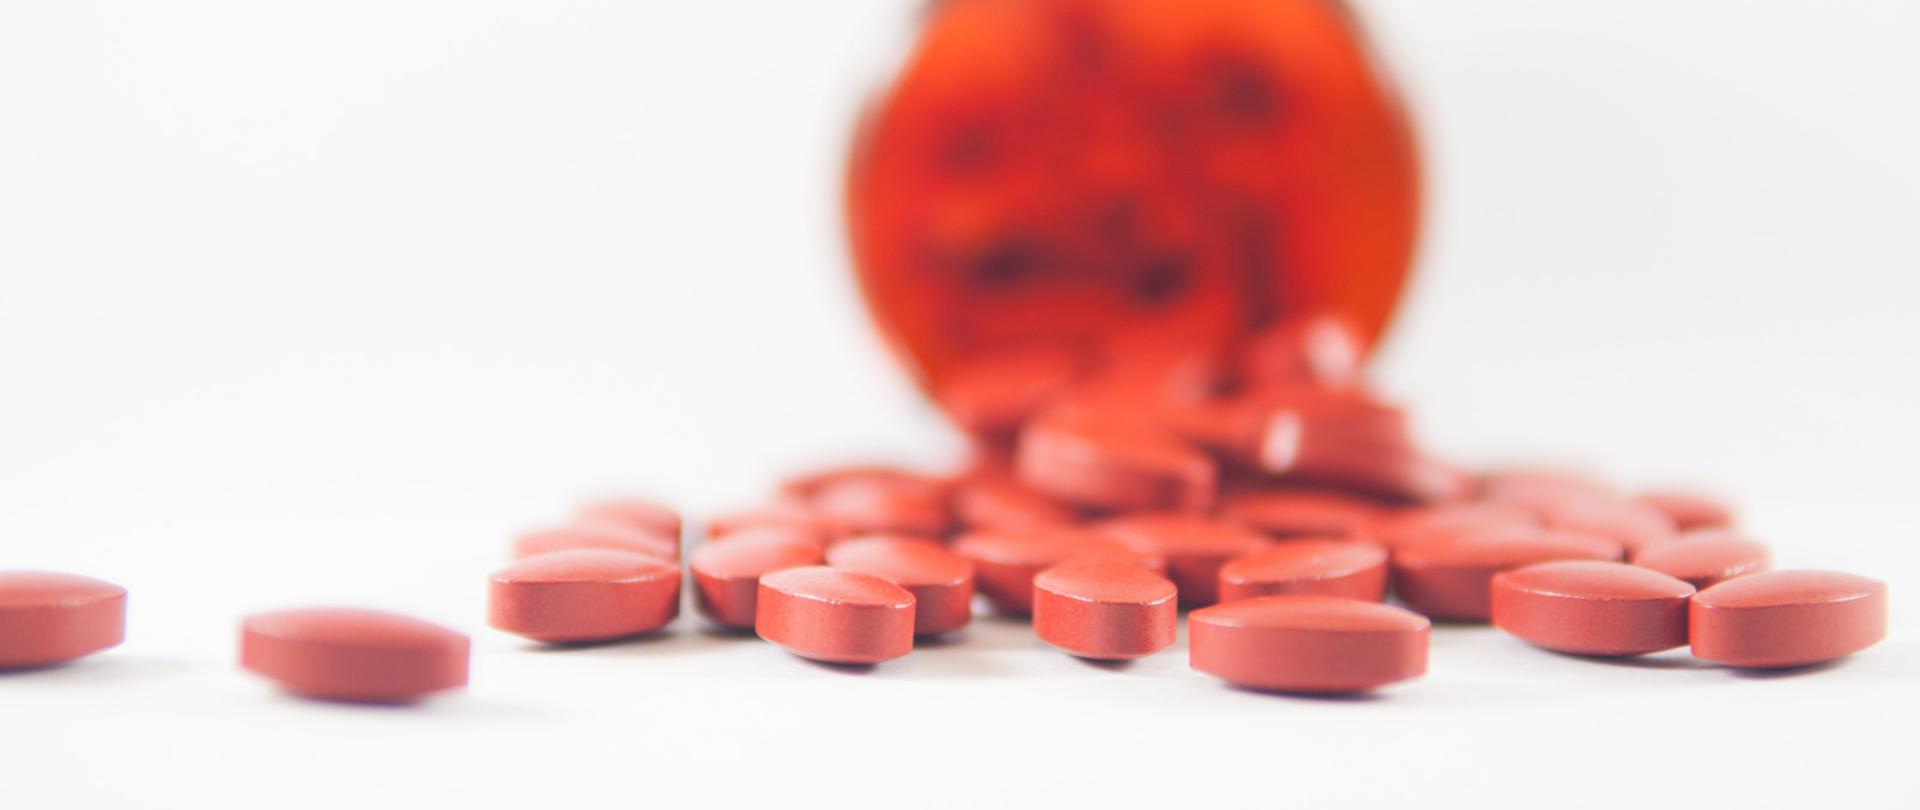 Czerwone tabletki wysypujące się z opakowania.